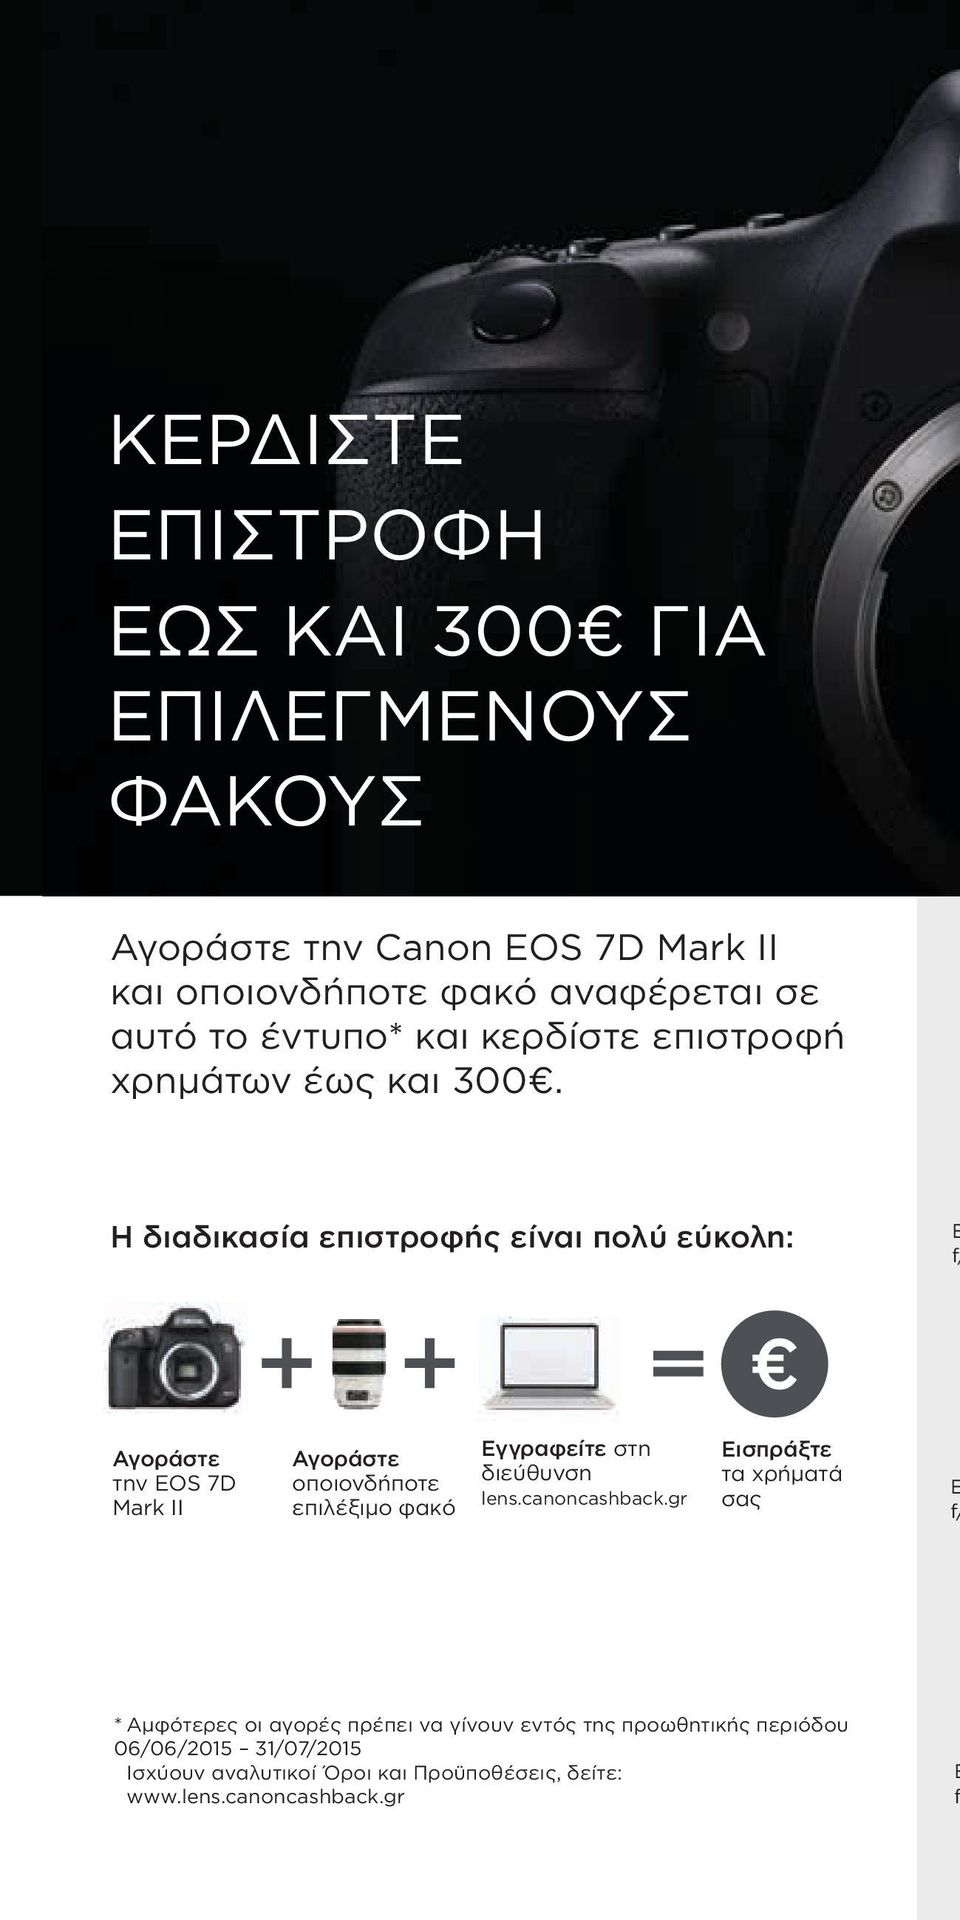 Η διαδικασία επιστροφής είναι πολύ εύκολη: E f/ Αγοράστε την EOS 7D Mark II Αγοράστε οποιονδήποτε επιλέξιμο φακό Εγγραφείτε στη